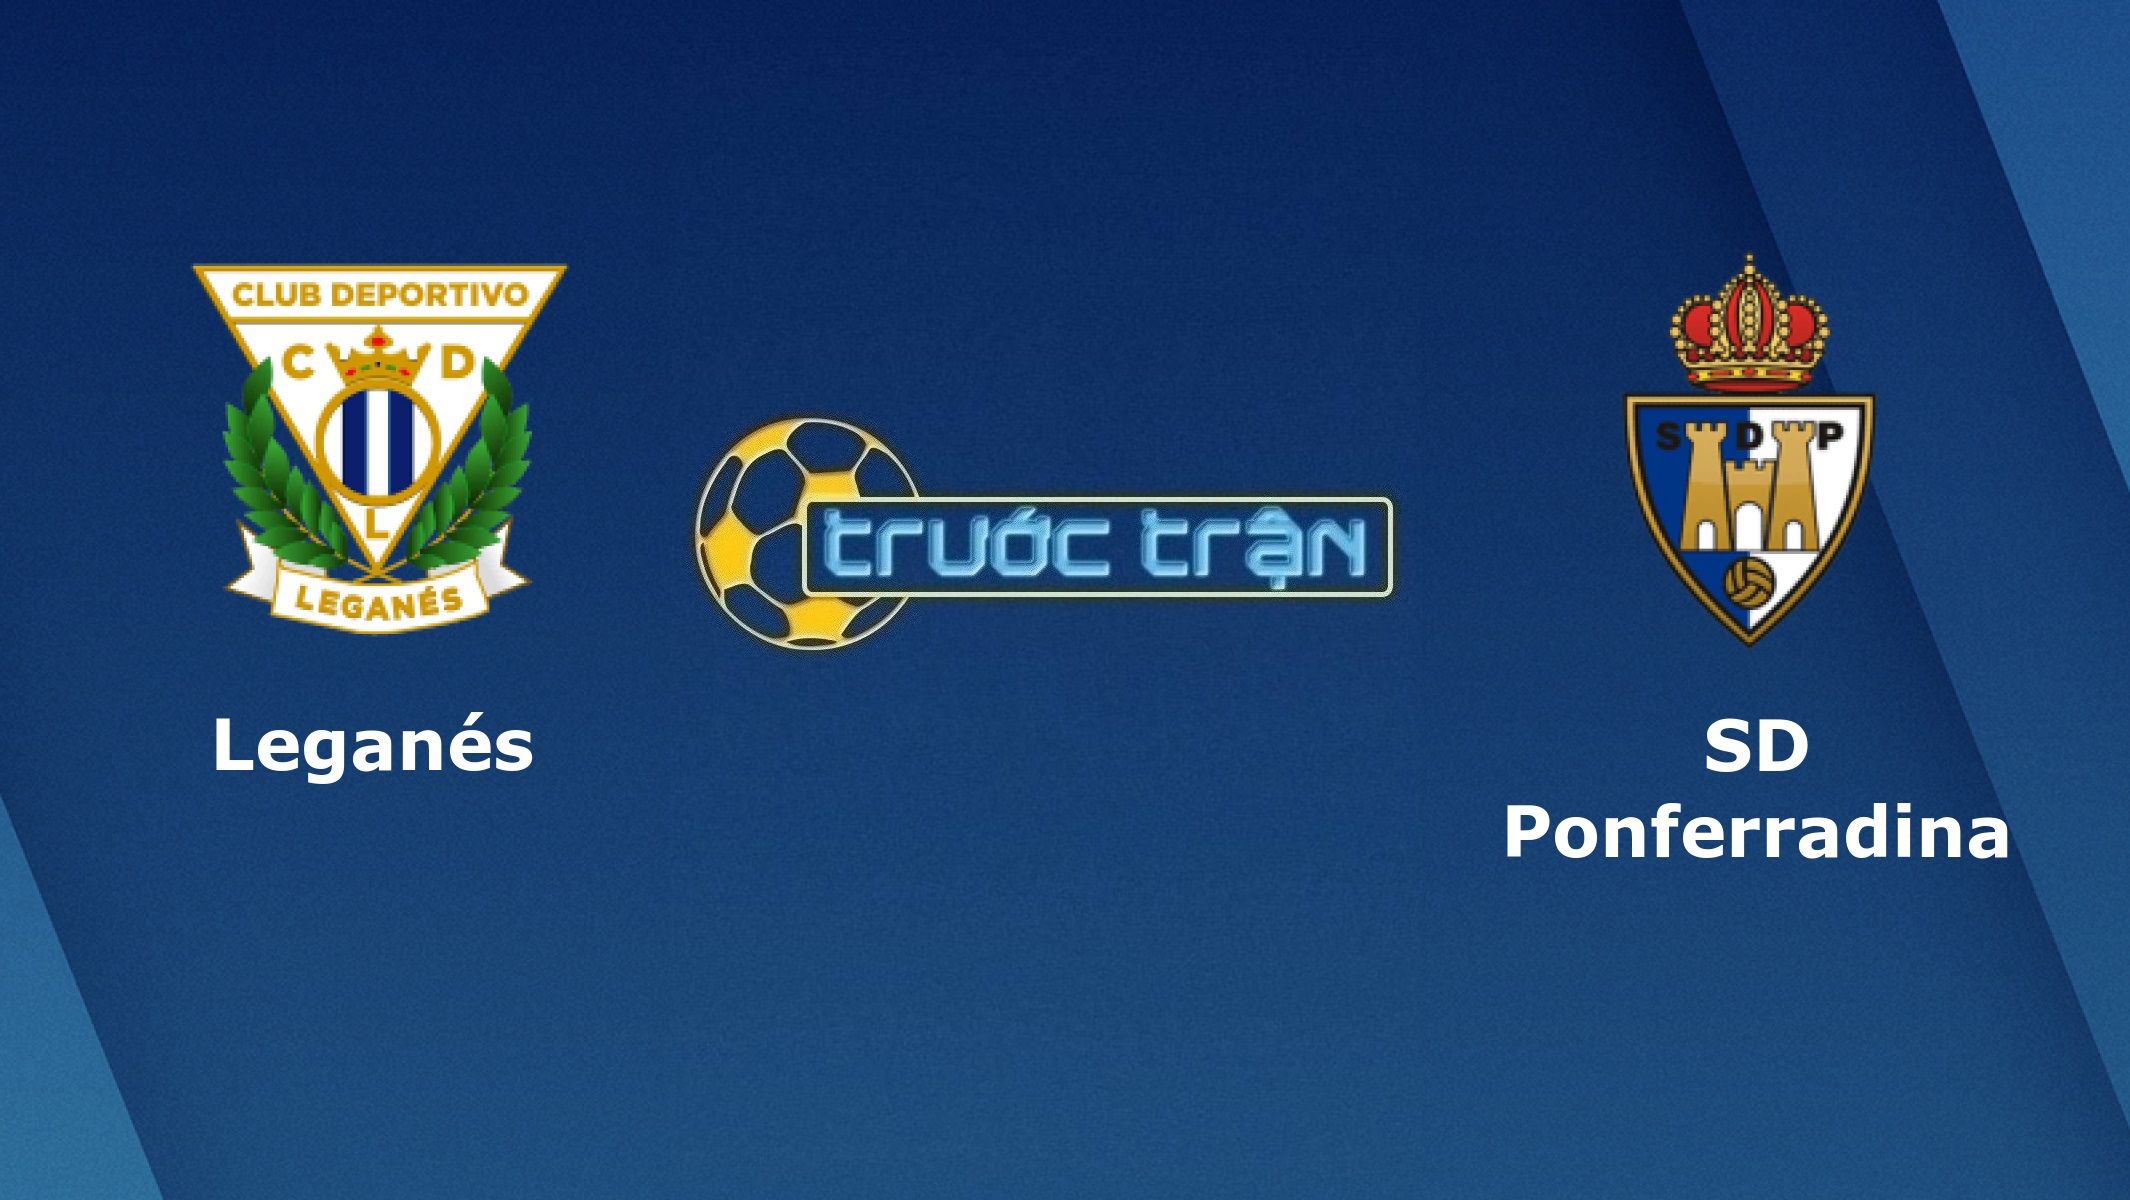 Leganes vs Ponferradina – Tip kèo bóng đá hôm nay – 00h00 20/04/2021